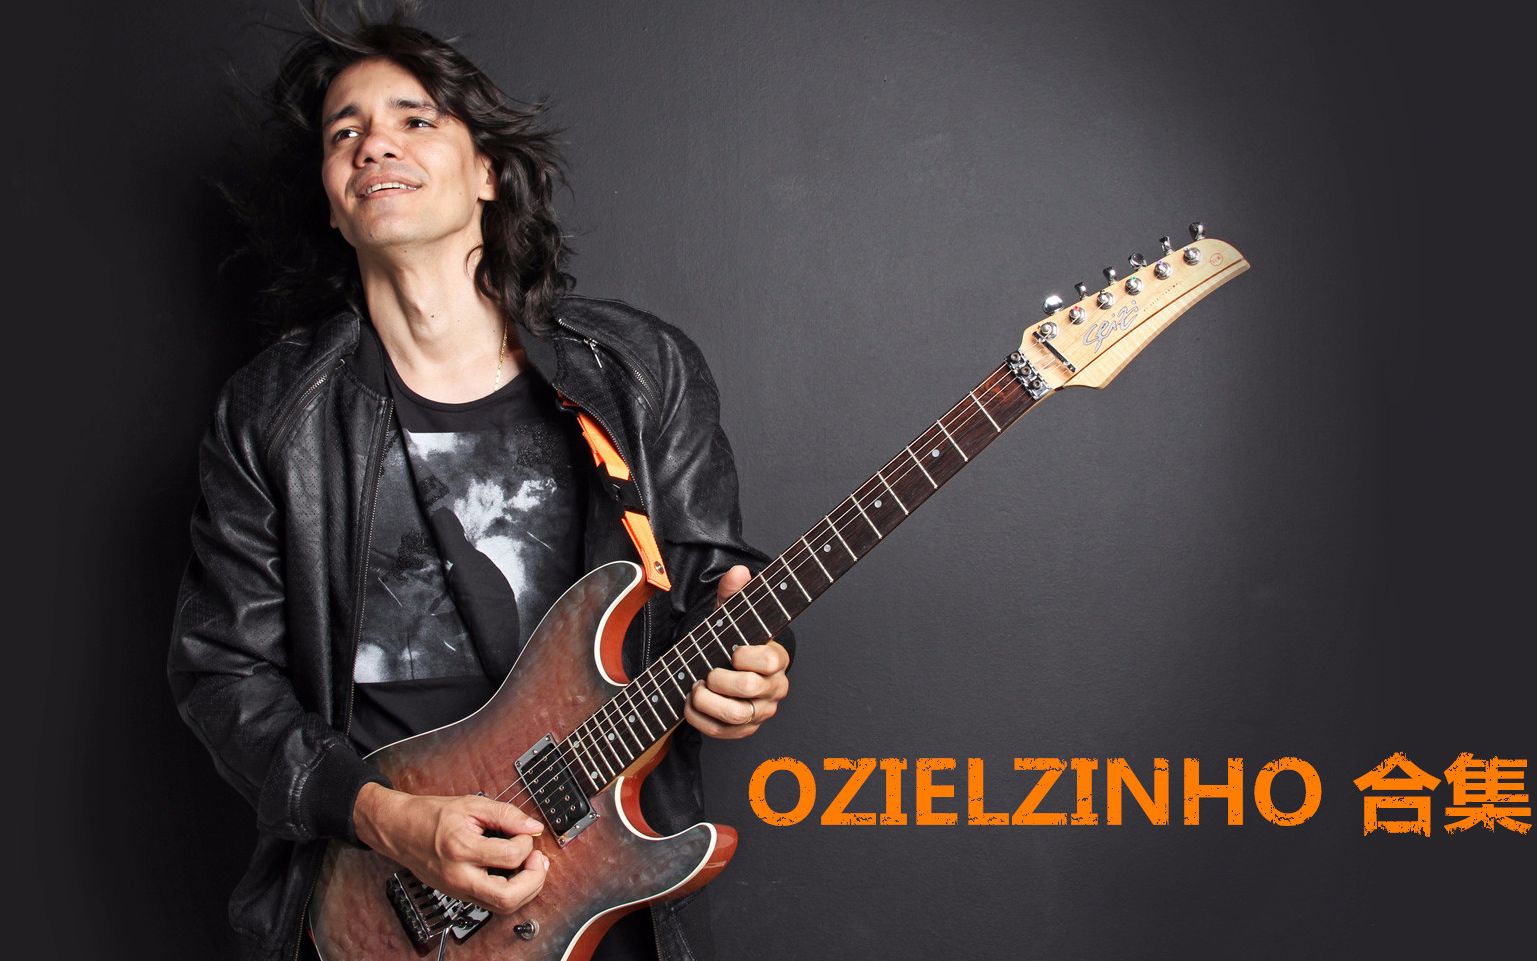 巴西吉他手ozielzinho图片